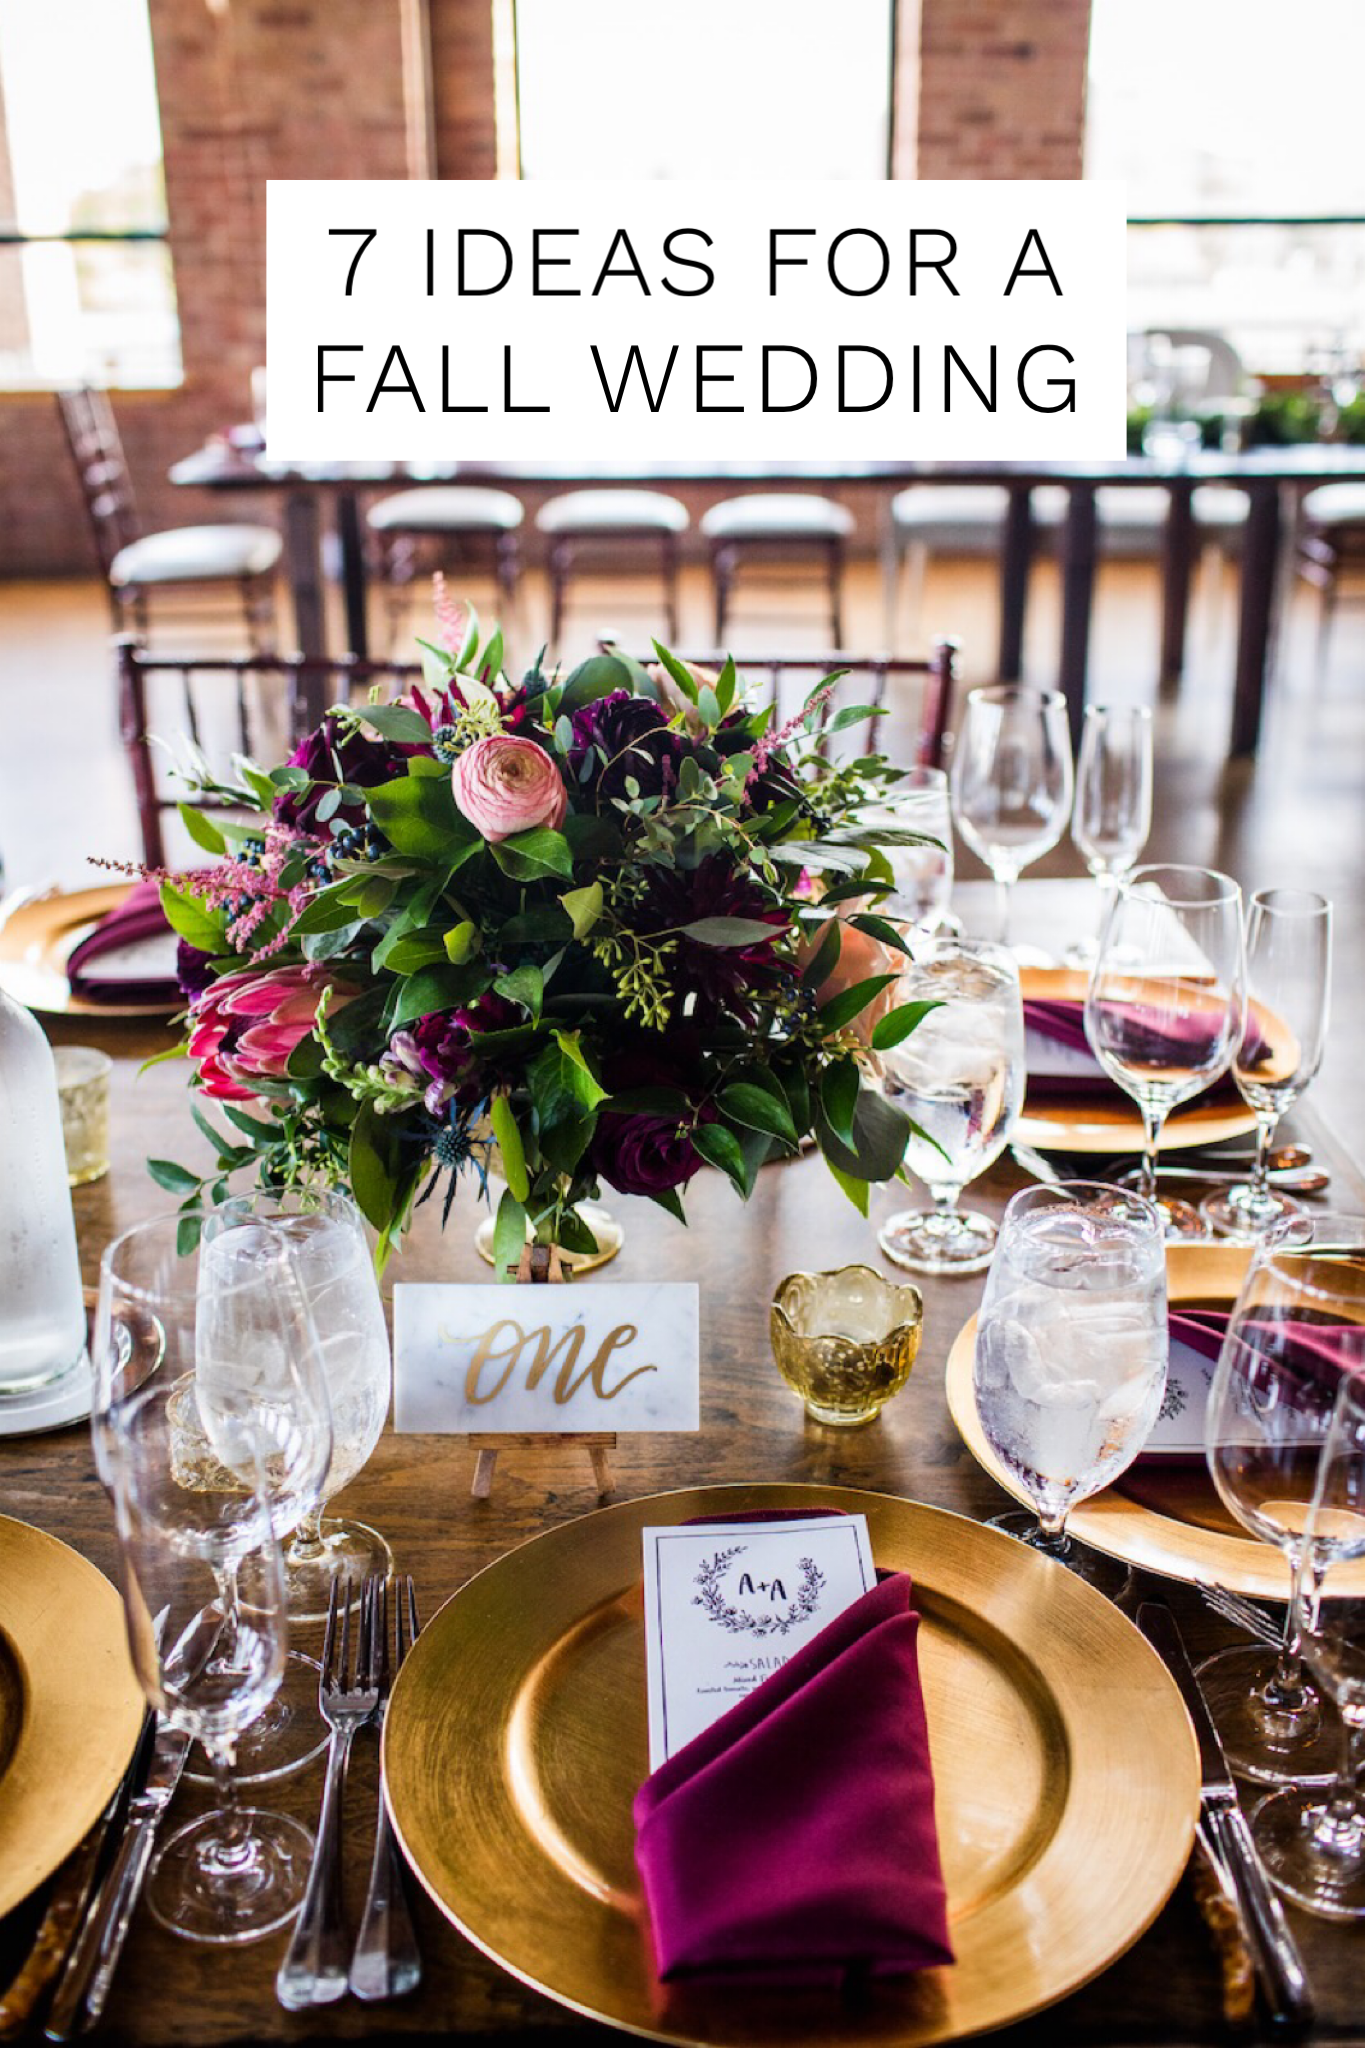 7 ideas for a Fall Wedding